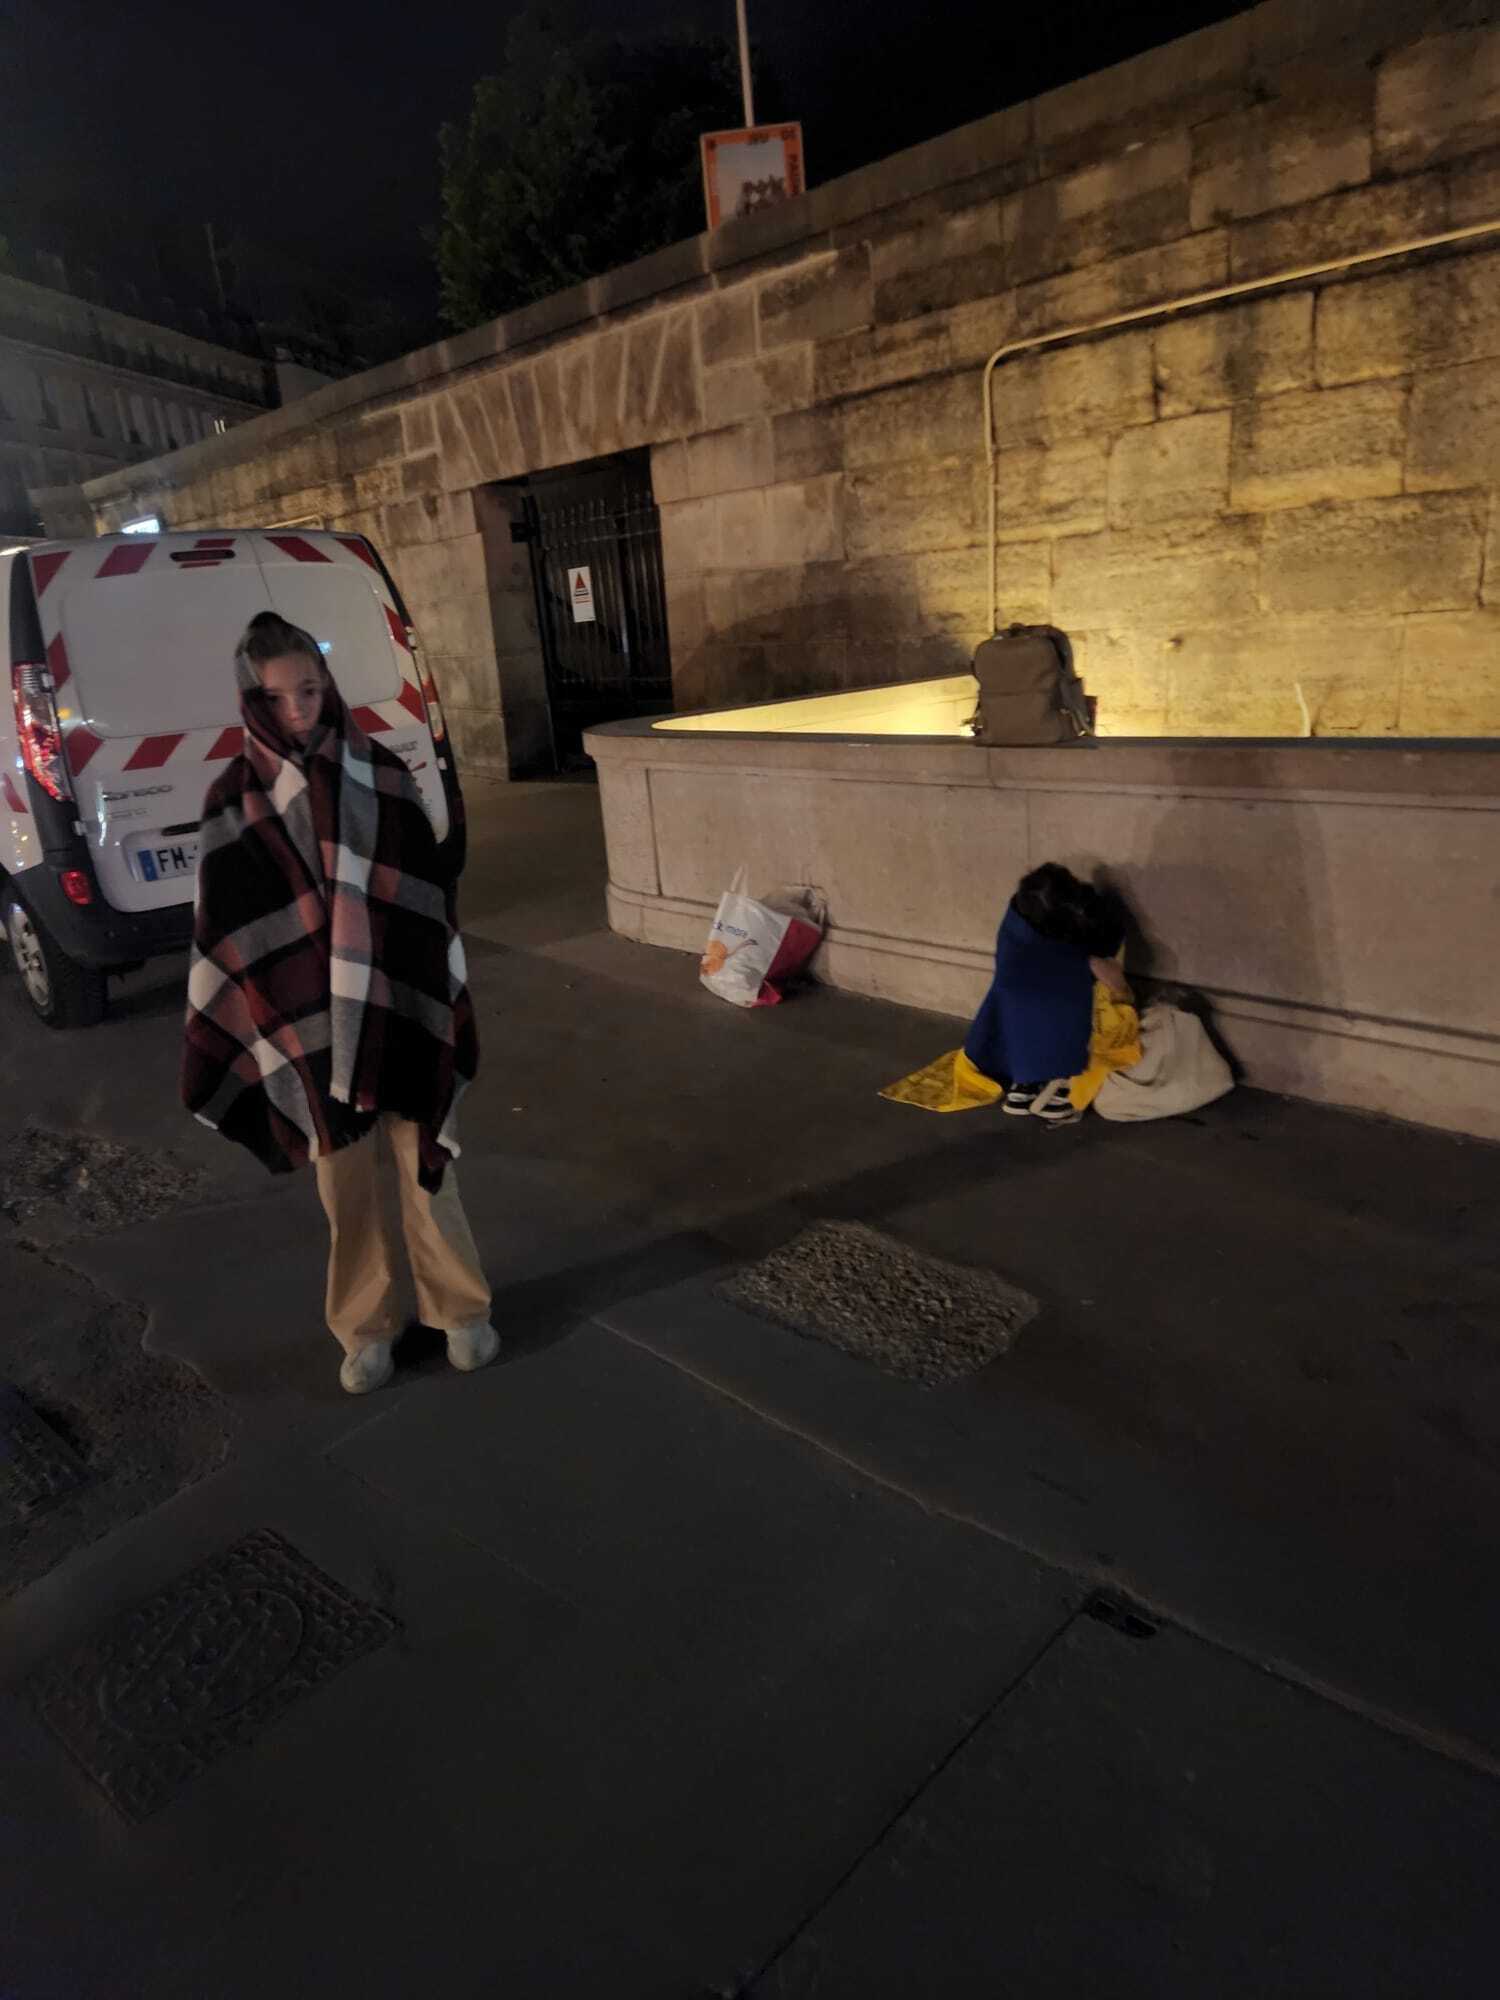 Забытые украинские дети на улицах Парижа, российский флаг и сомнительные сборы денег: что известно о почетном консуле Украины в Доминикане, попавшей в скандал